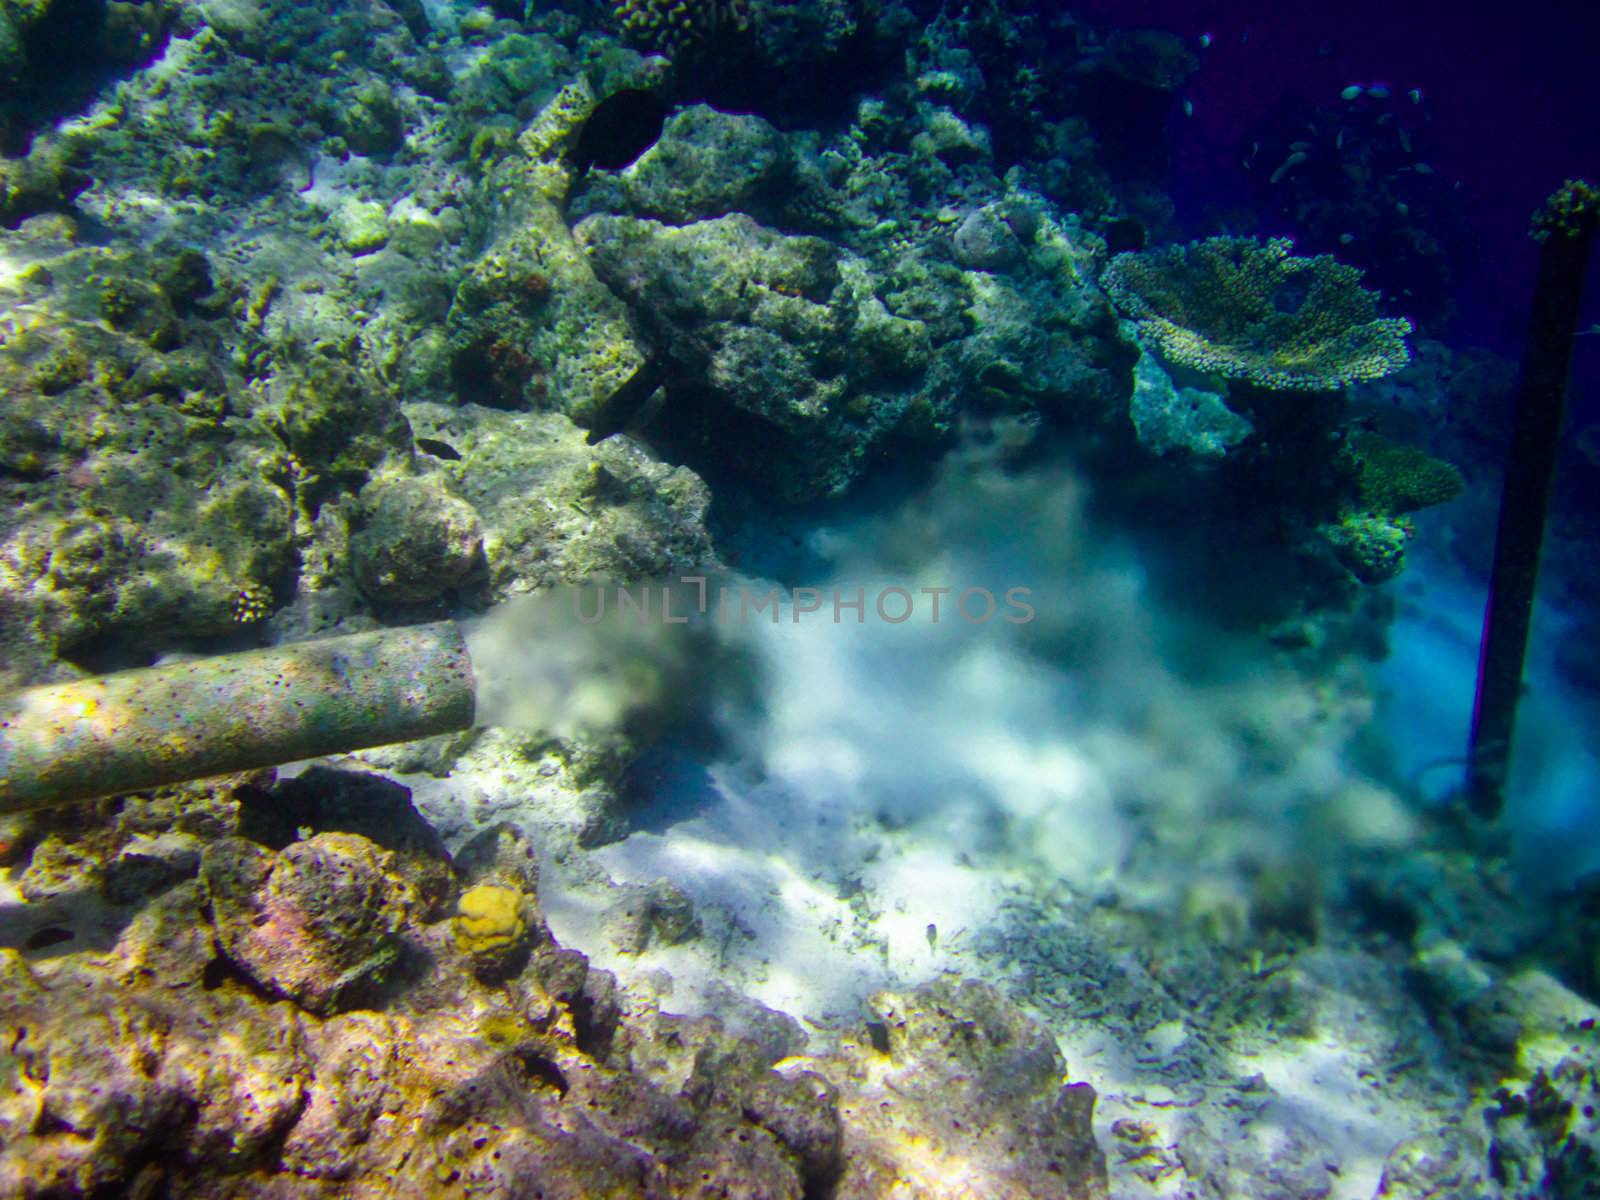 under water world at Maldives by anobis